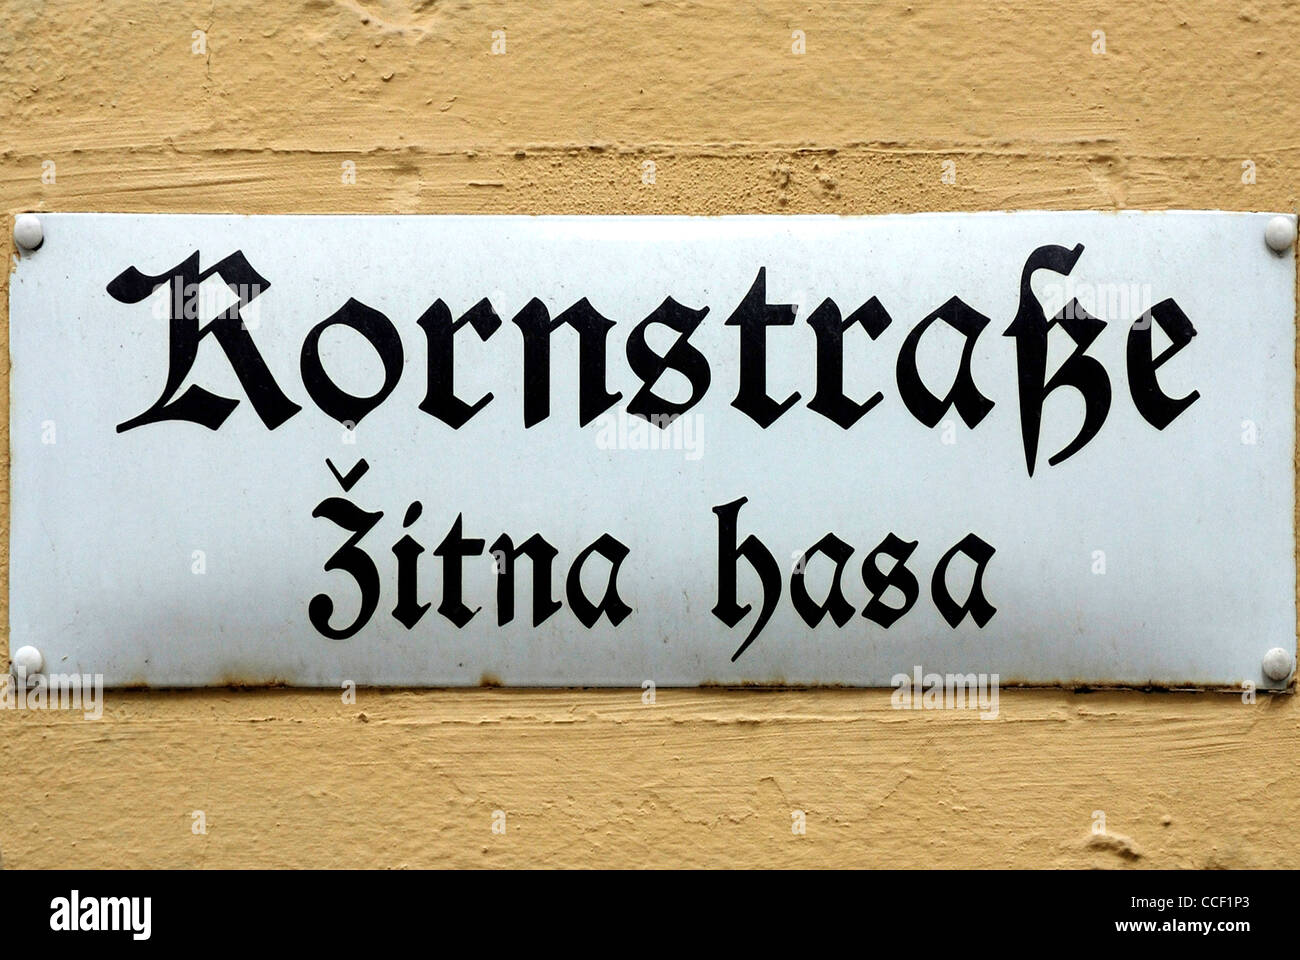 Un cartello stradale di Bautzen in lingua tedesca e in lingua serba al Kornstrasse - Zitna presentauna. Foto Stock